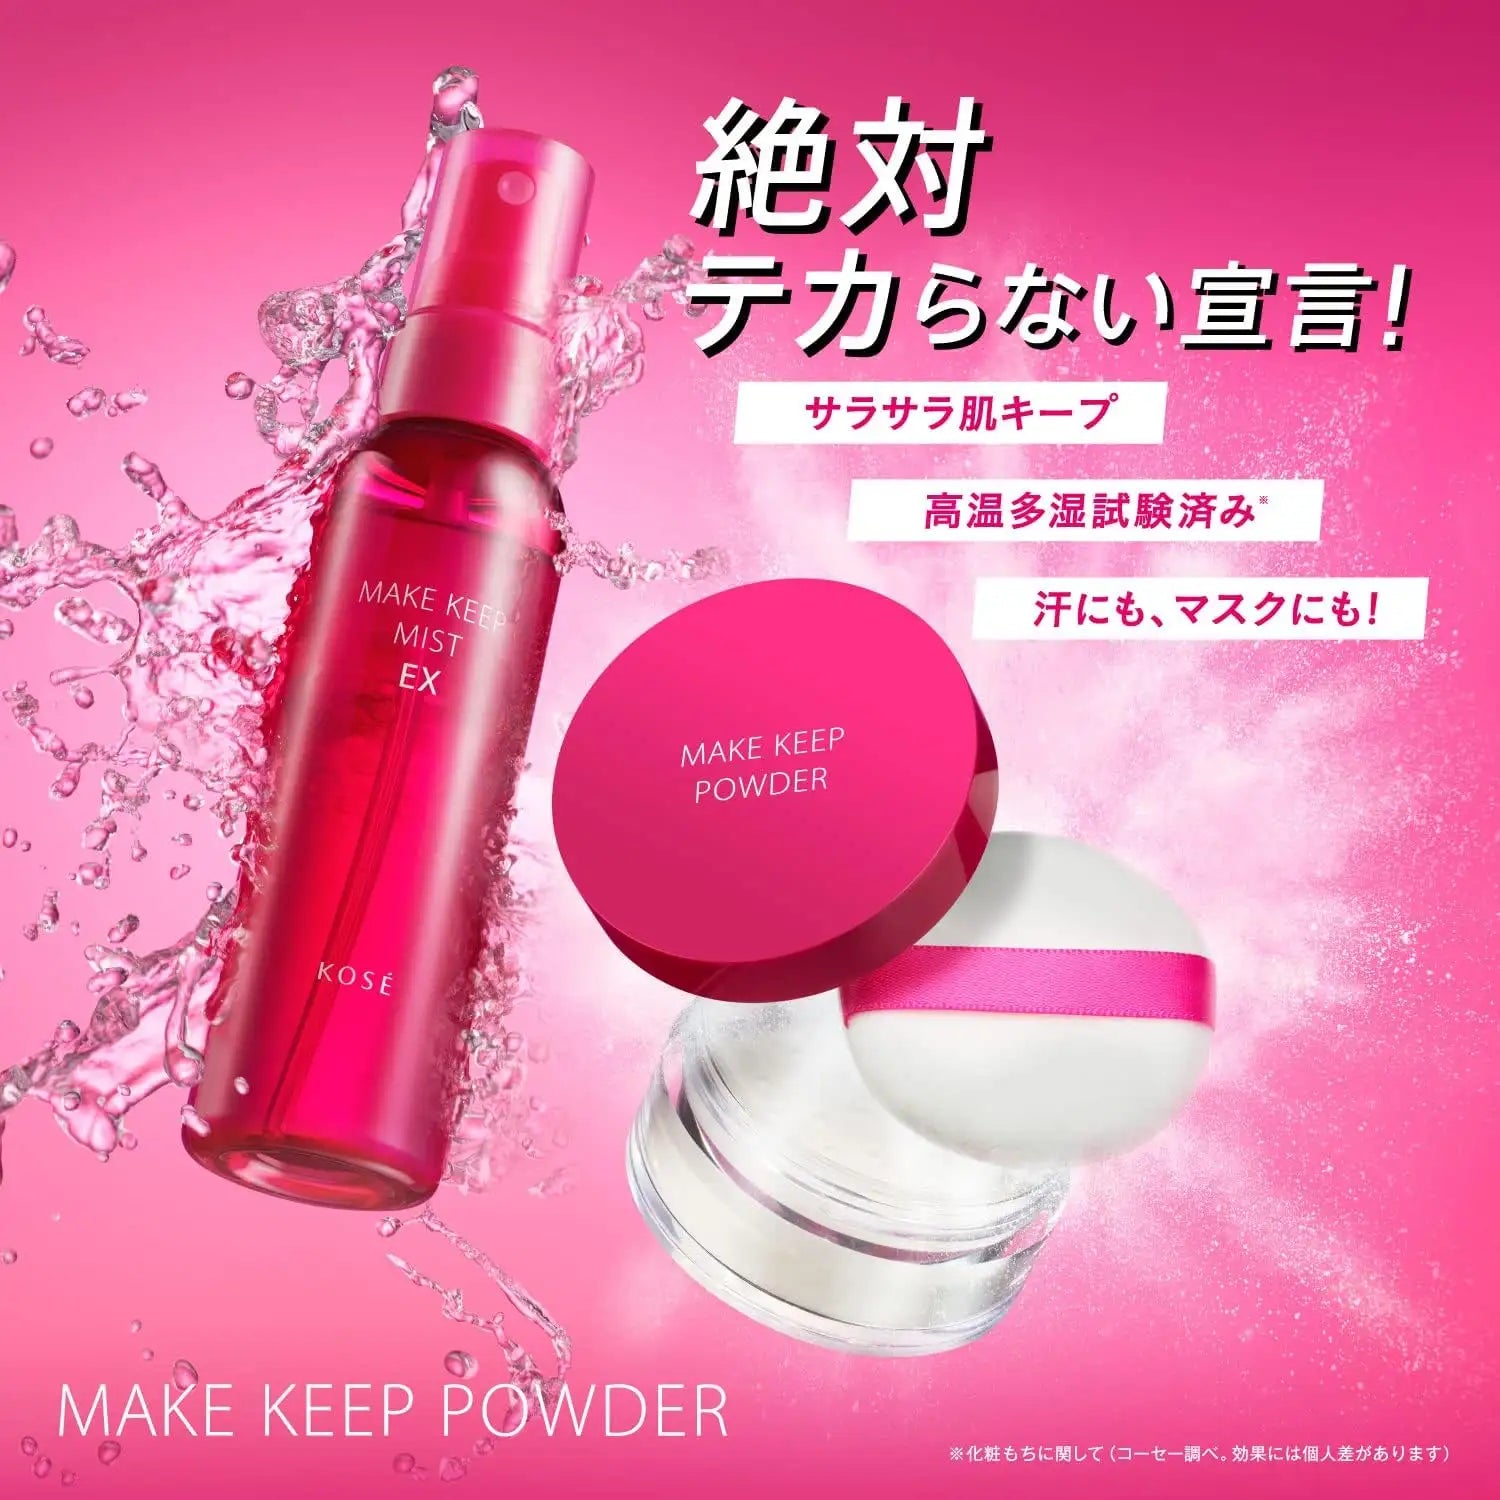 Kose Make Keep Powder 5g - Buy Me Japan